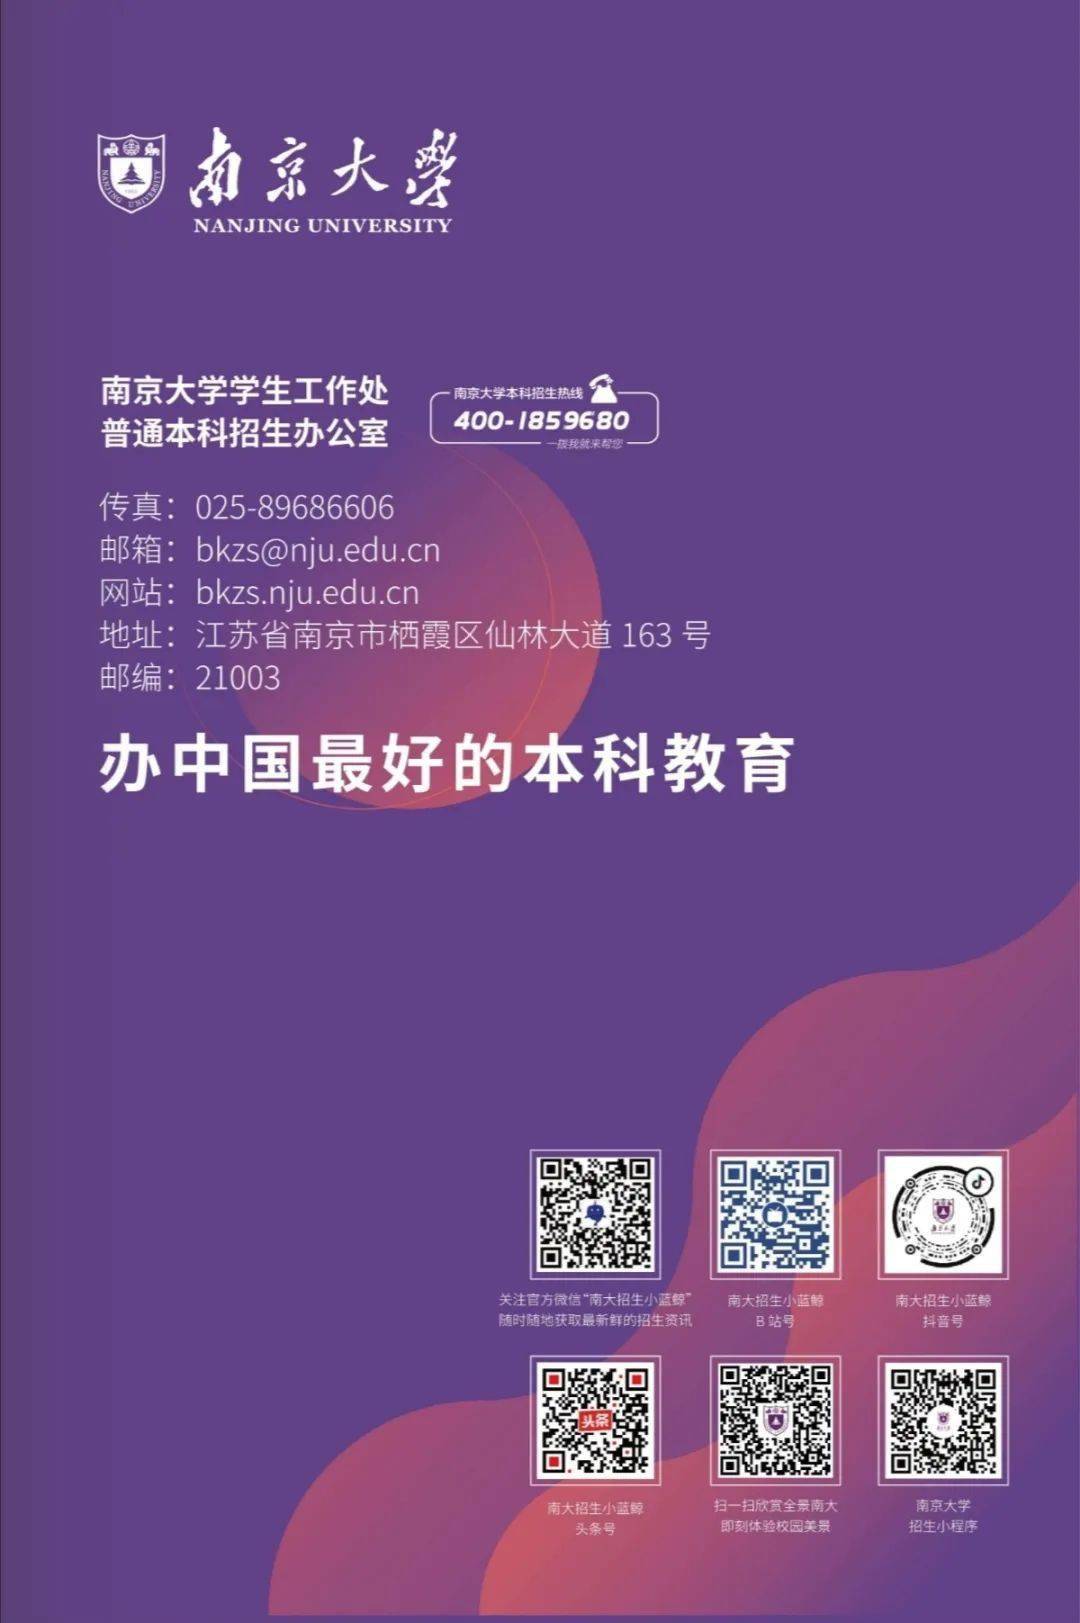 南京大学2020本科报考"一键"指南,招生计划权威发布!